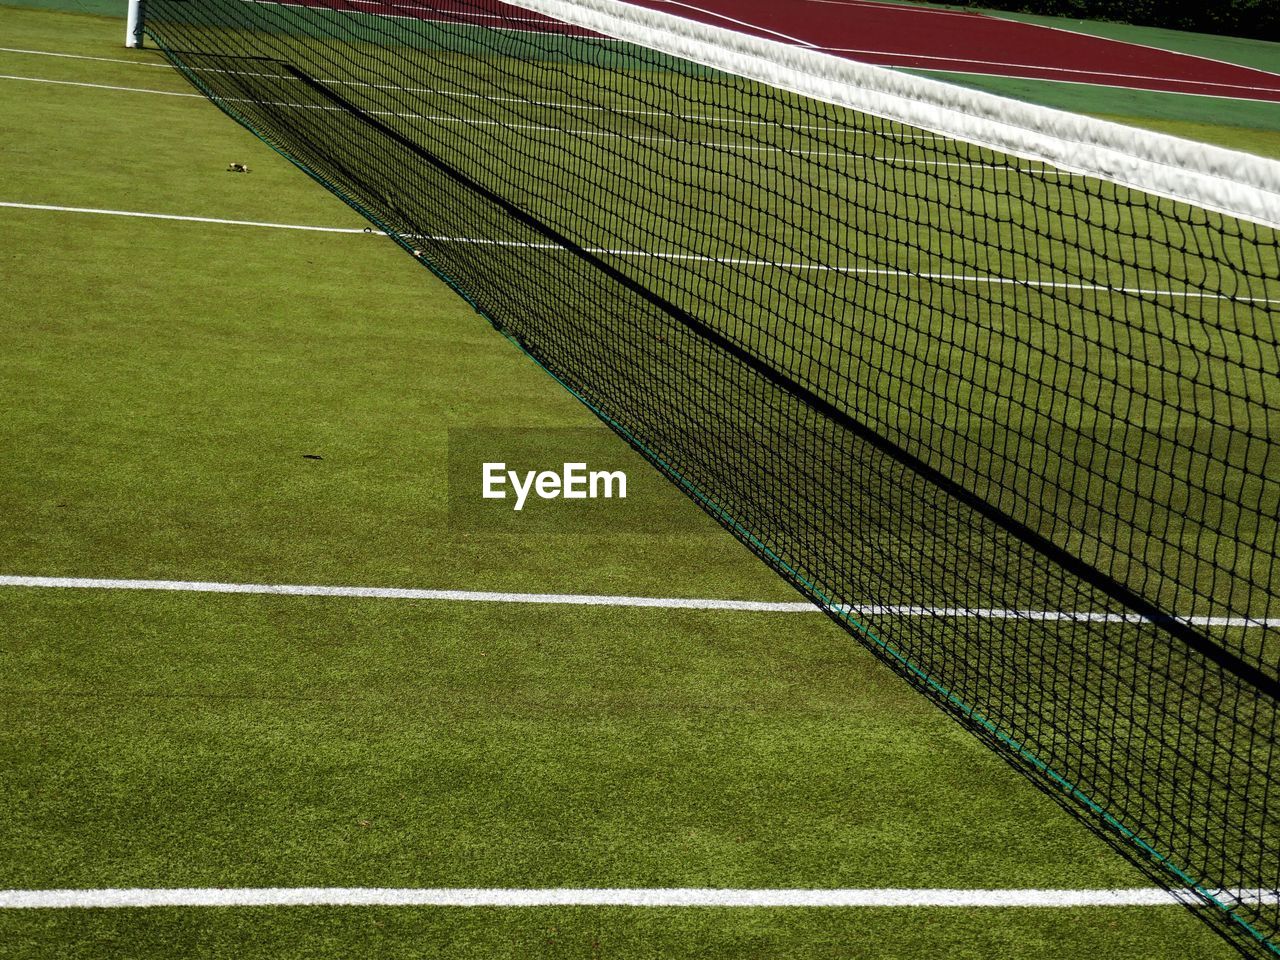 Net at tennis court